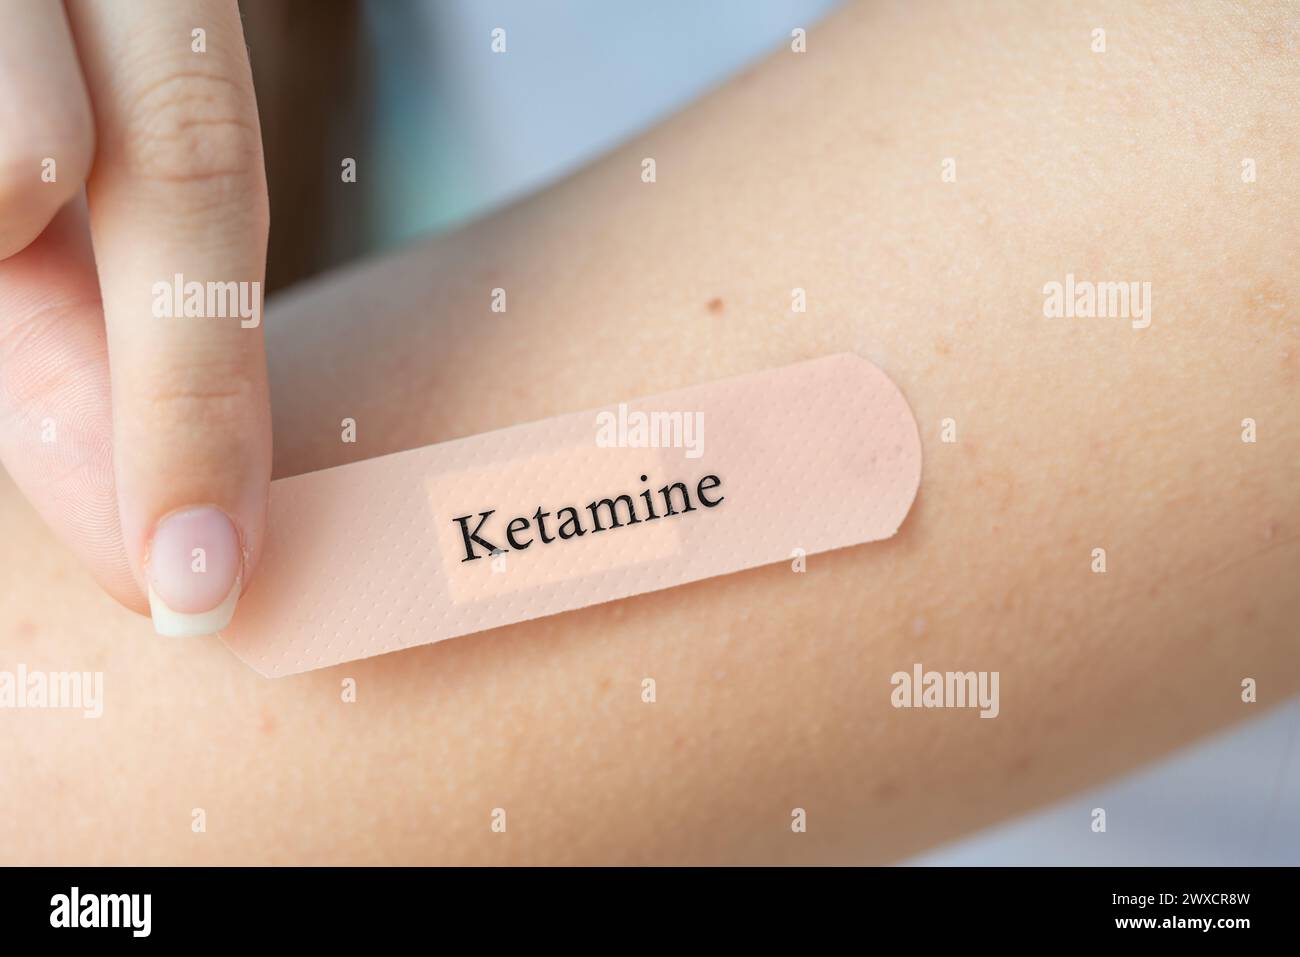 Ketamin-transdermales Pflaster, konzeptionelles Bild. Anästhetikum zur Schmerzbehandlung und Depressionsbehandlung. Stockfoto